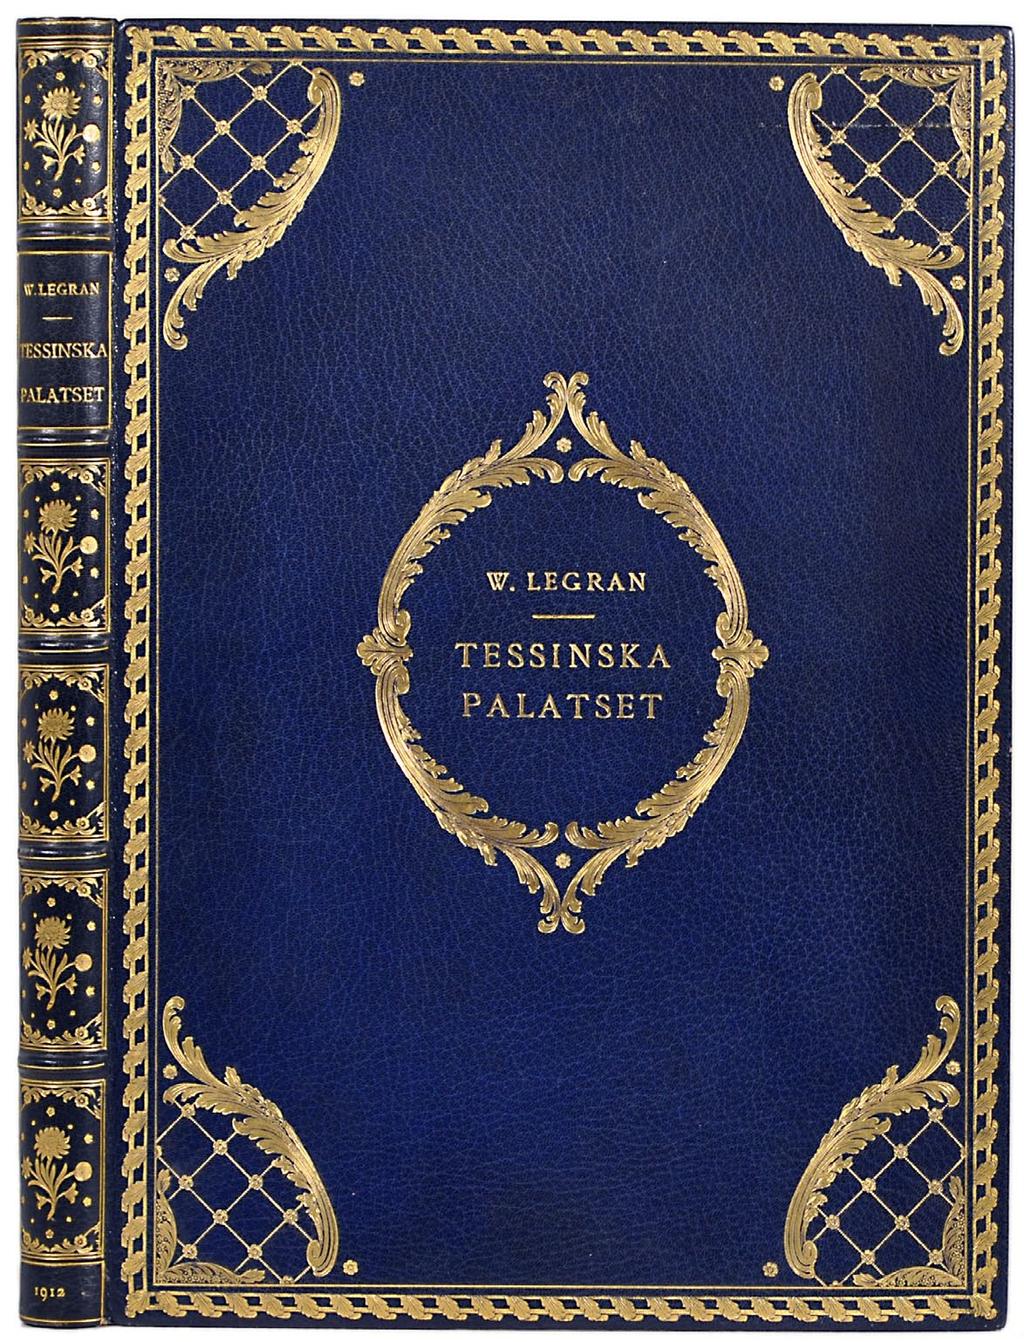 21. [Tessin] (WRANGEL, F. U.) Tessinska palatset. Ett bidrag till öfverståthållarehusets i Stockholm historia. Anteckningar af W. Legran. Sthlm, 1912. (8),44,(4) s. & 50 plr.